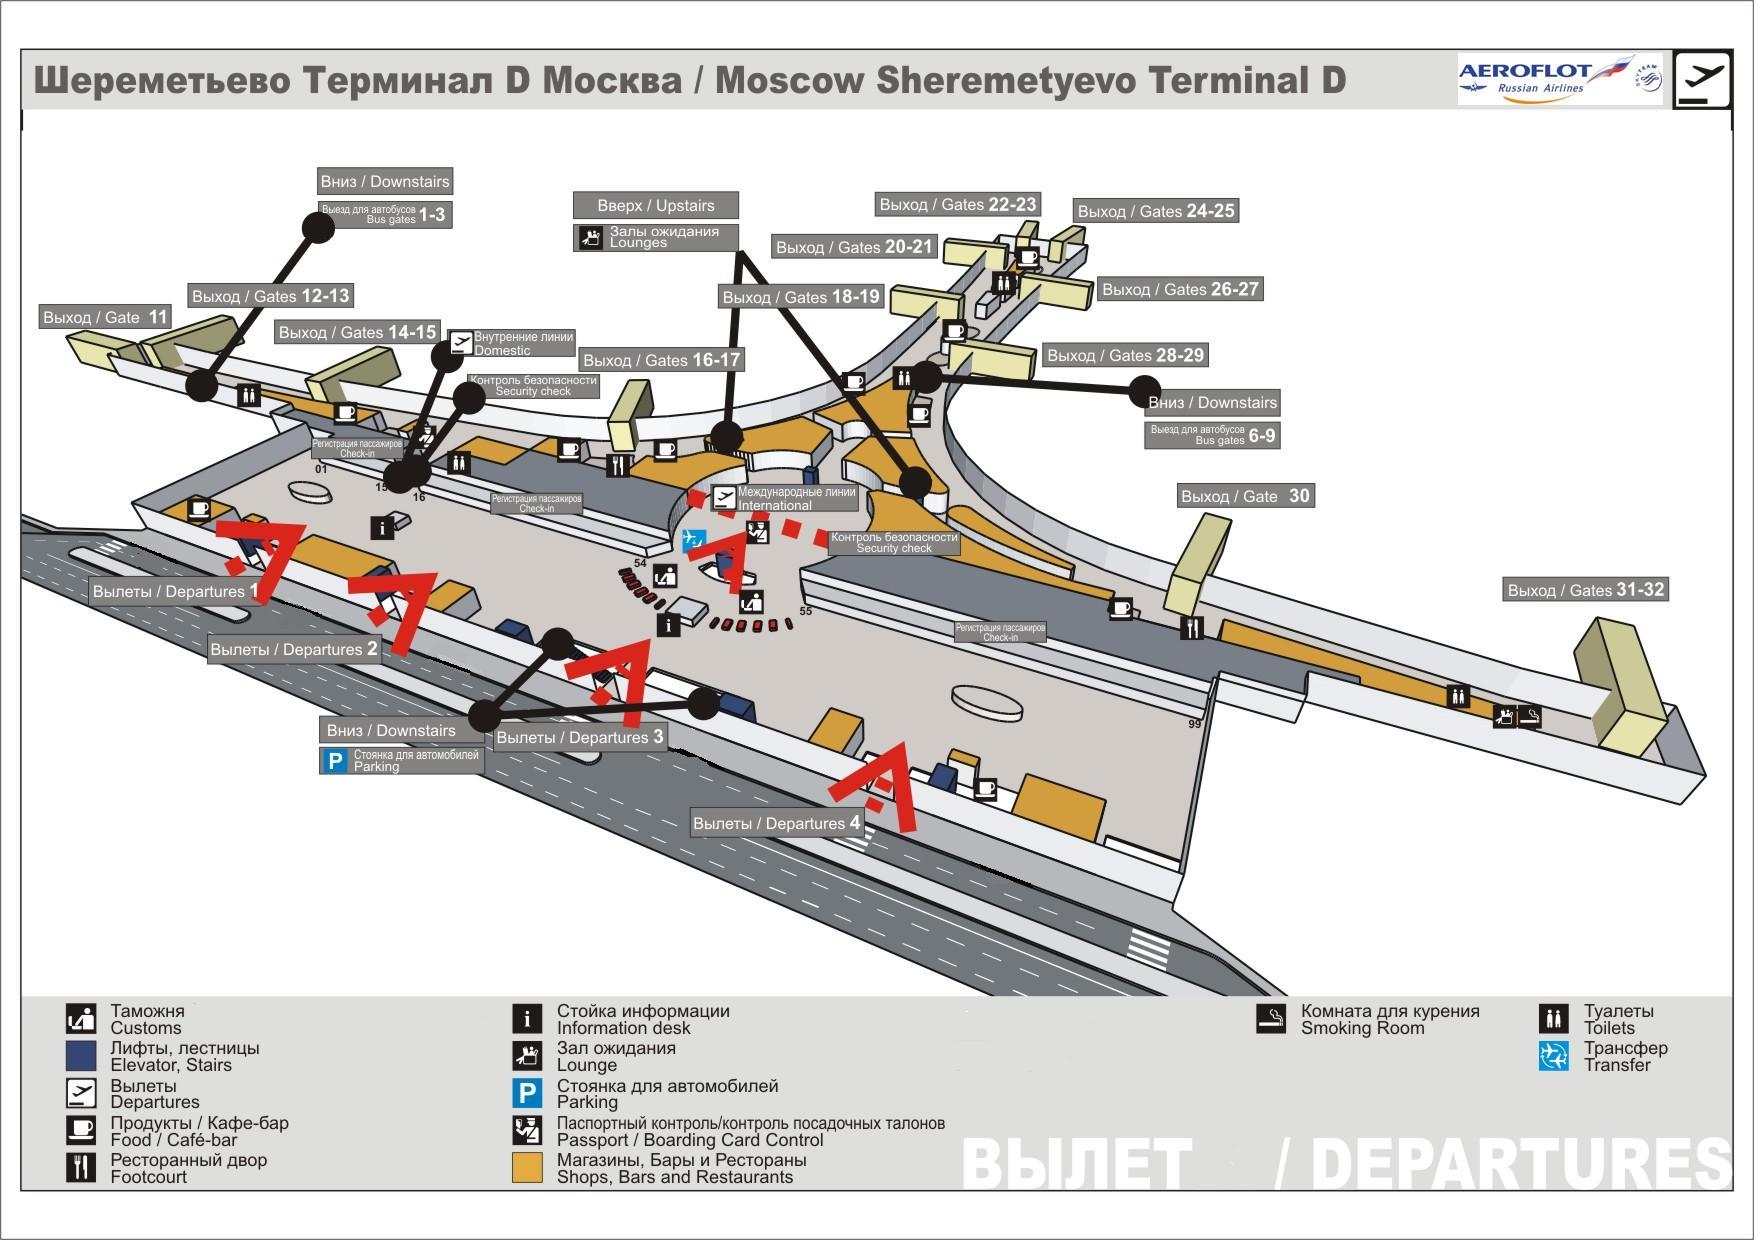 Схема терминала D аэропорта Шереметьево третий этаж